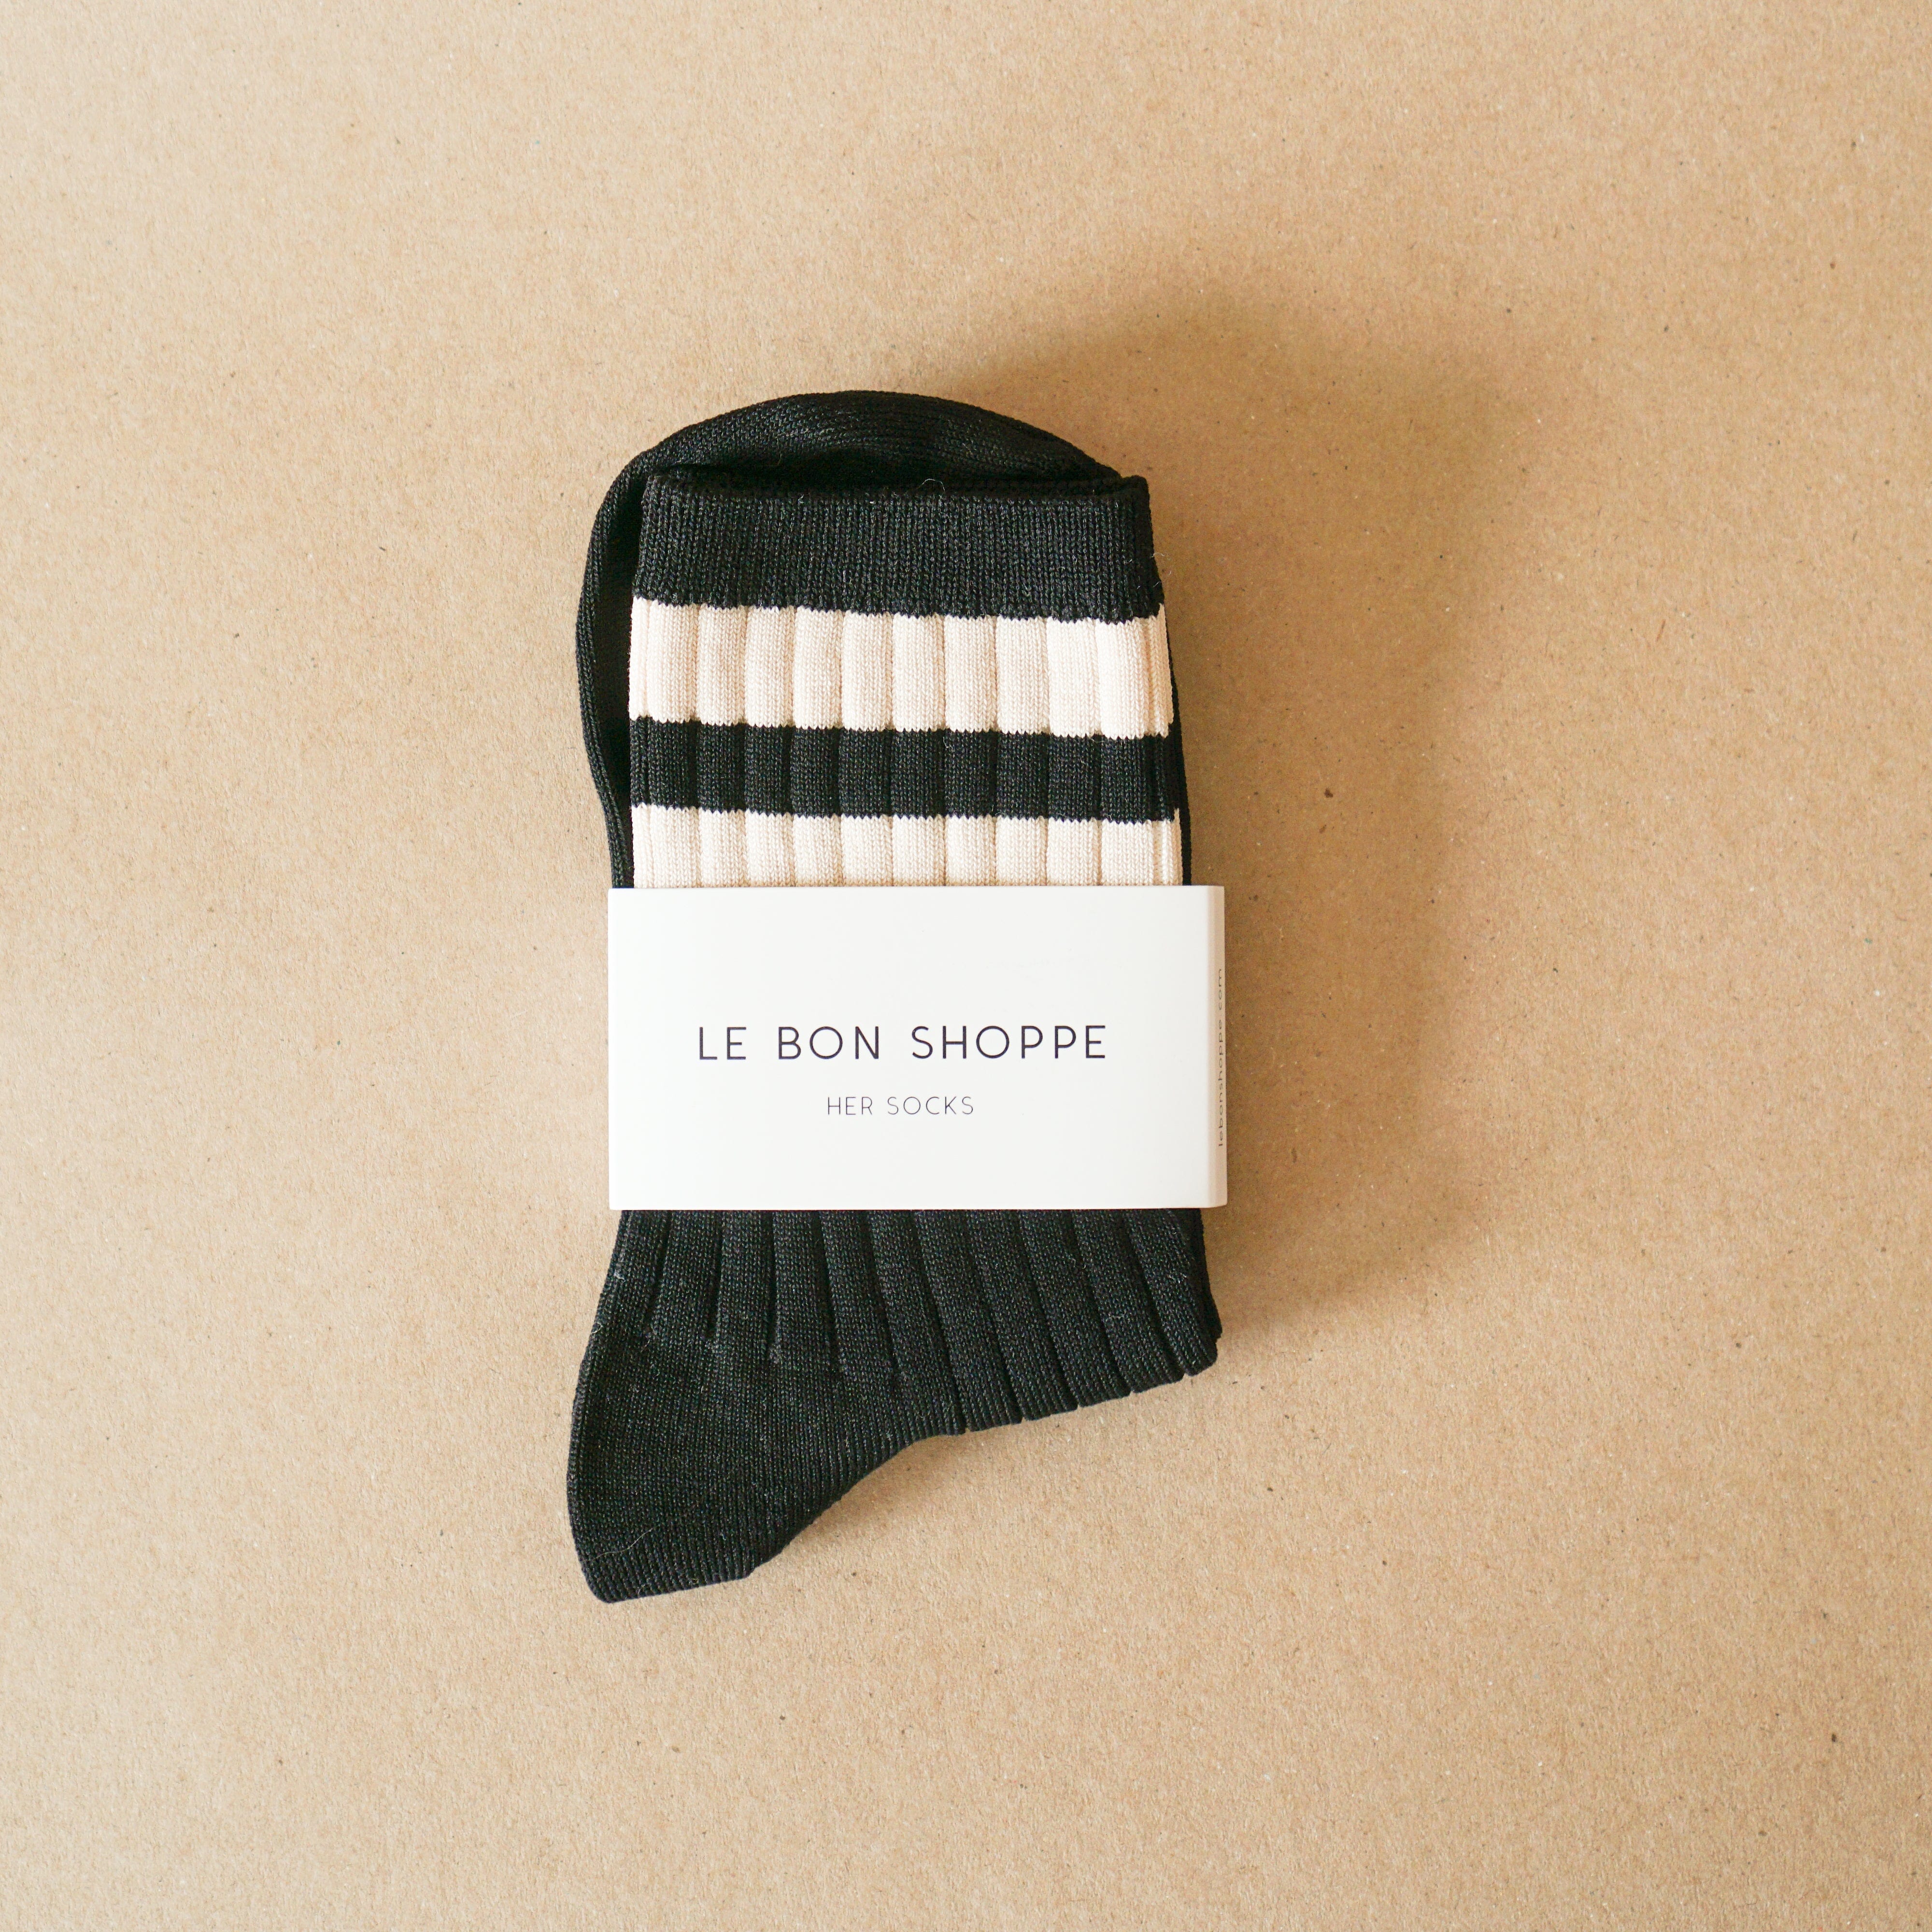 Le Bon Shoppe socks Black Le Bon "Her Socks" Varsity